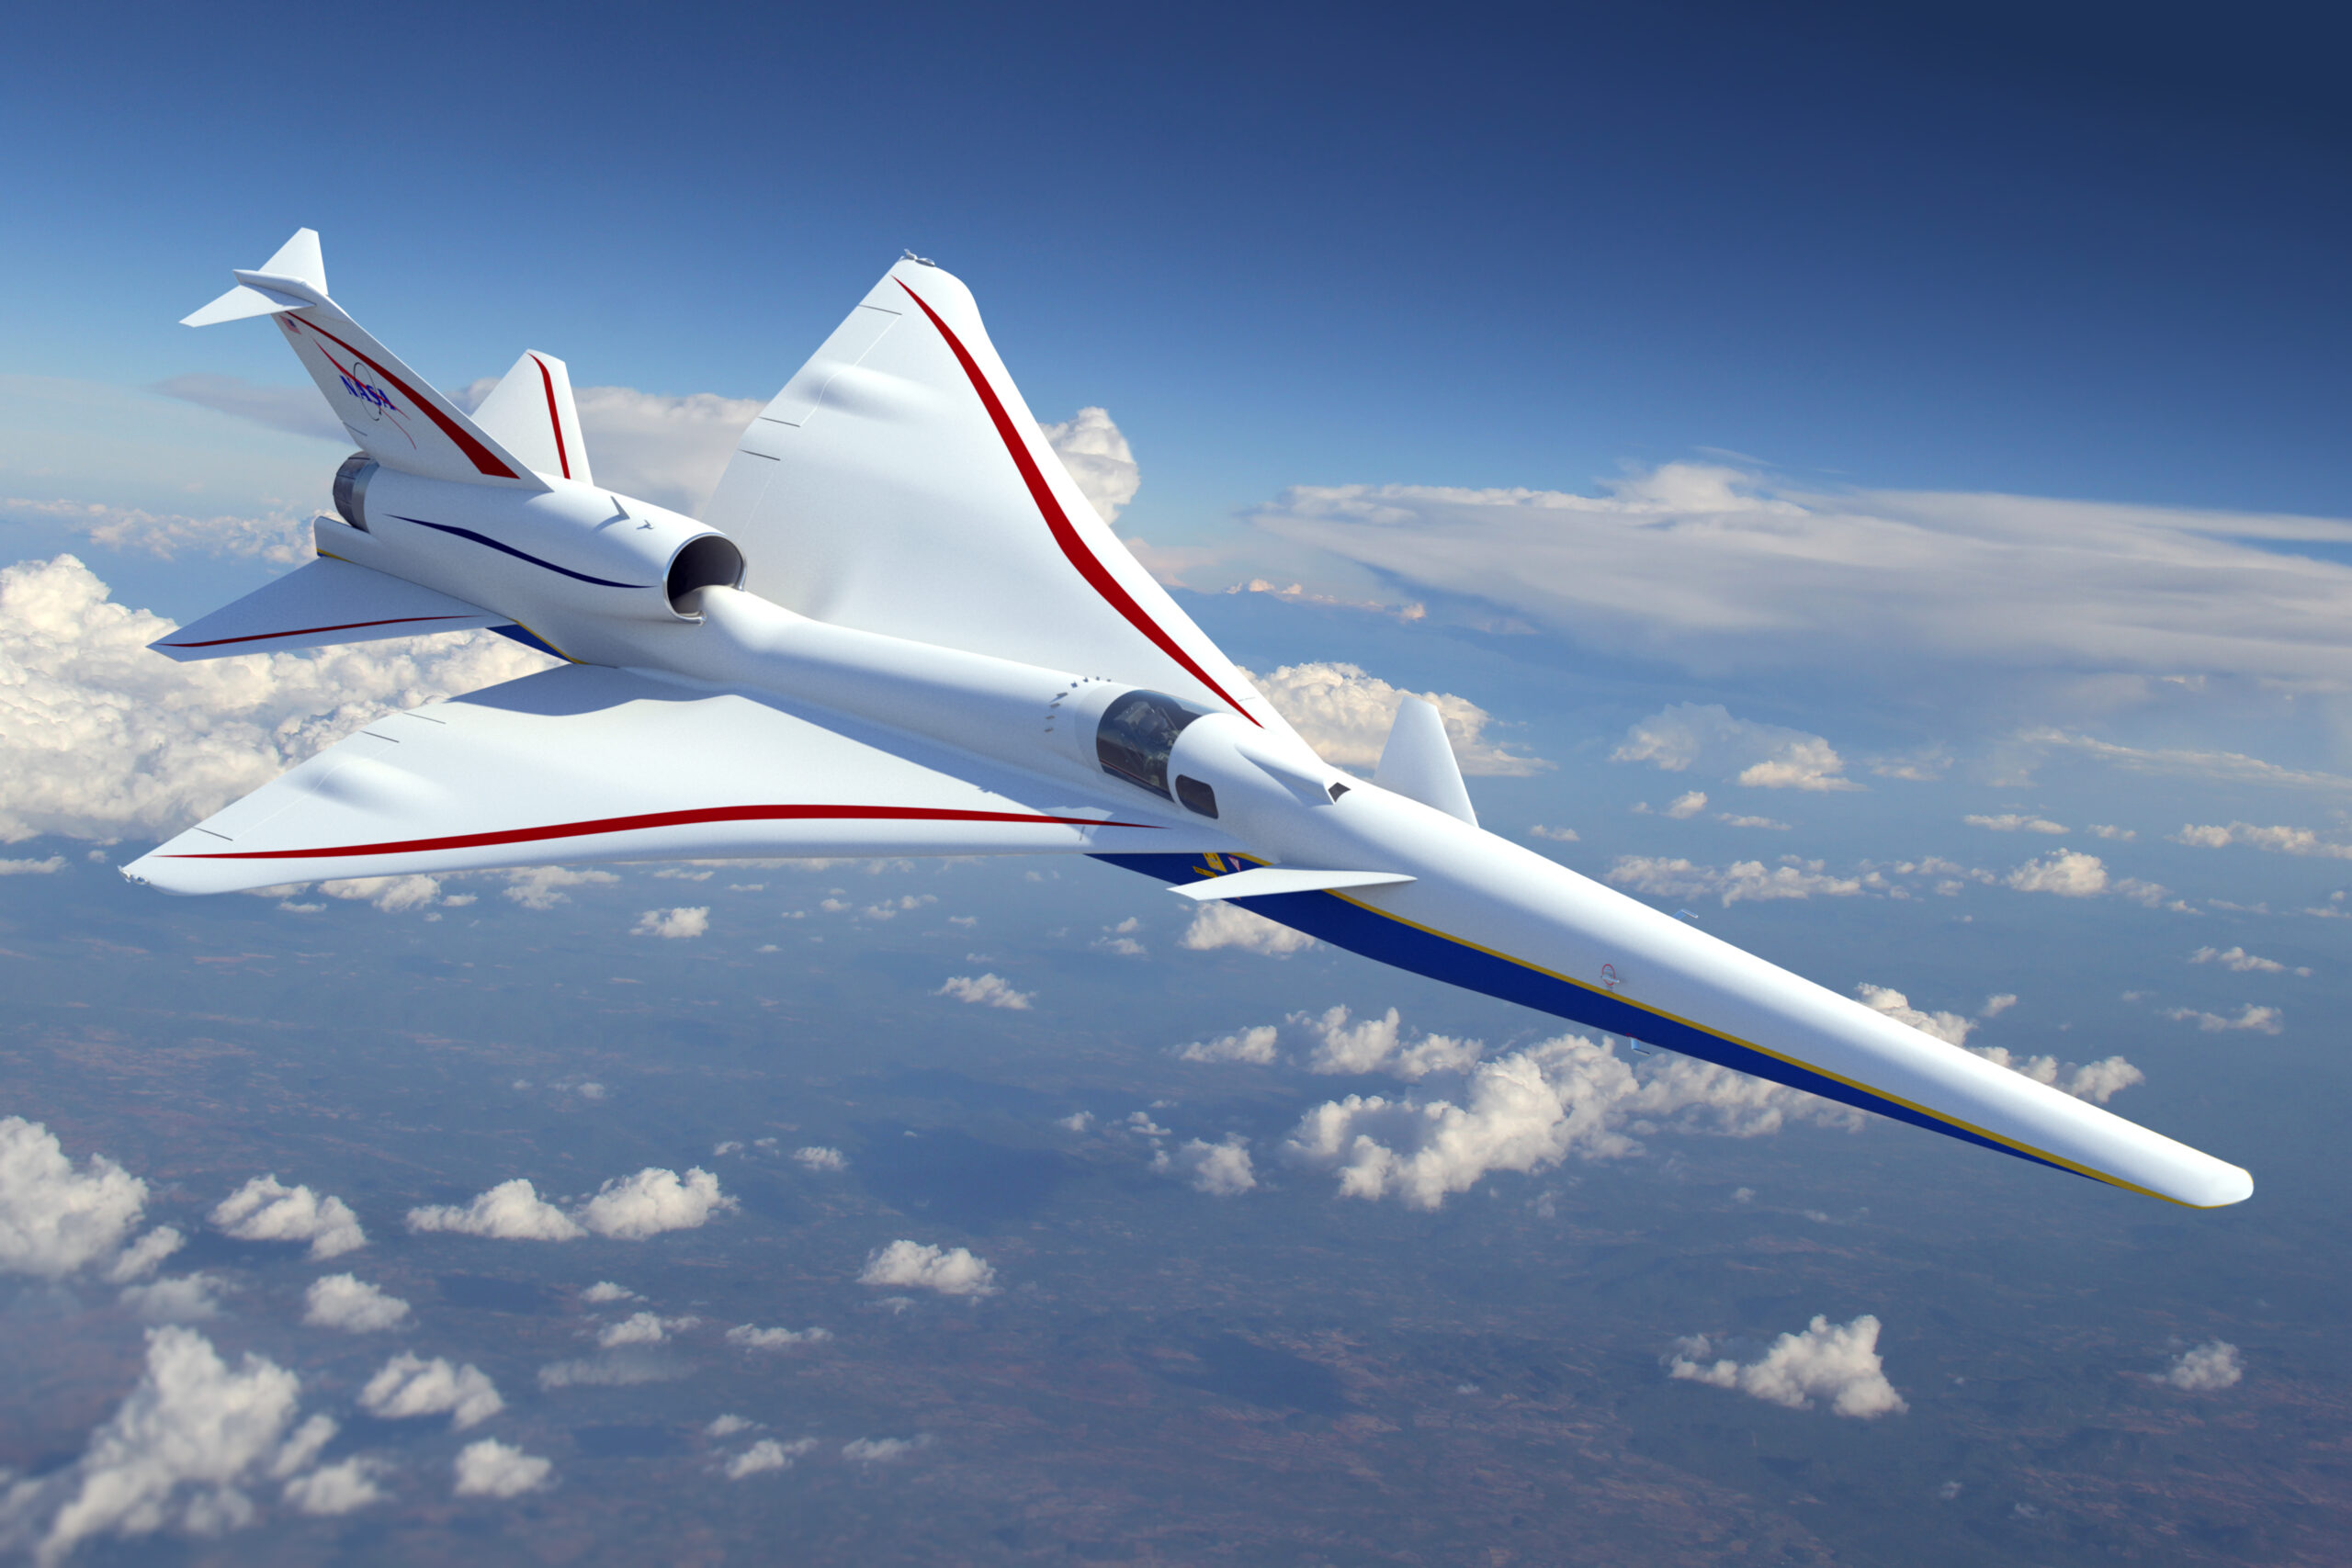 Un avión supersónico silencioso podría revolucionar la aviación – Resumen ejecutivo